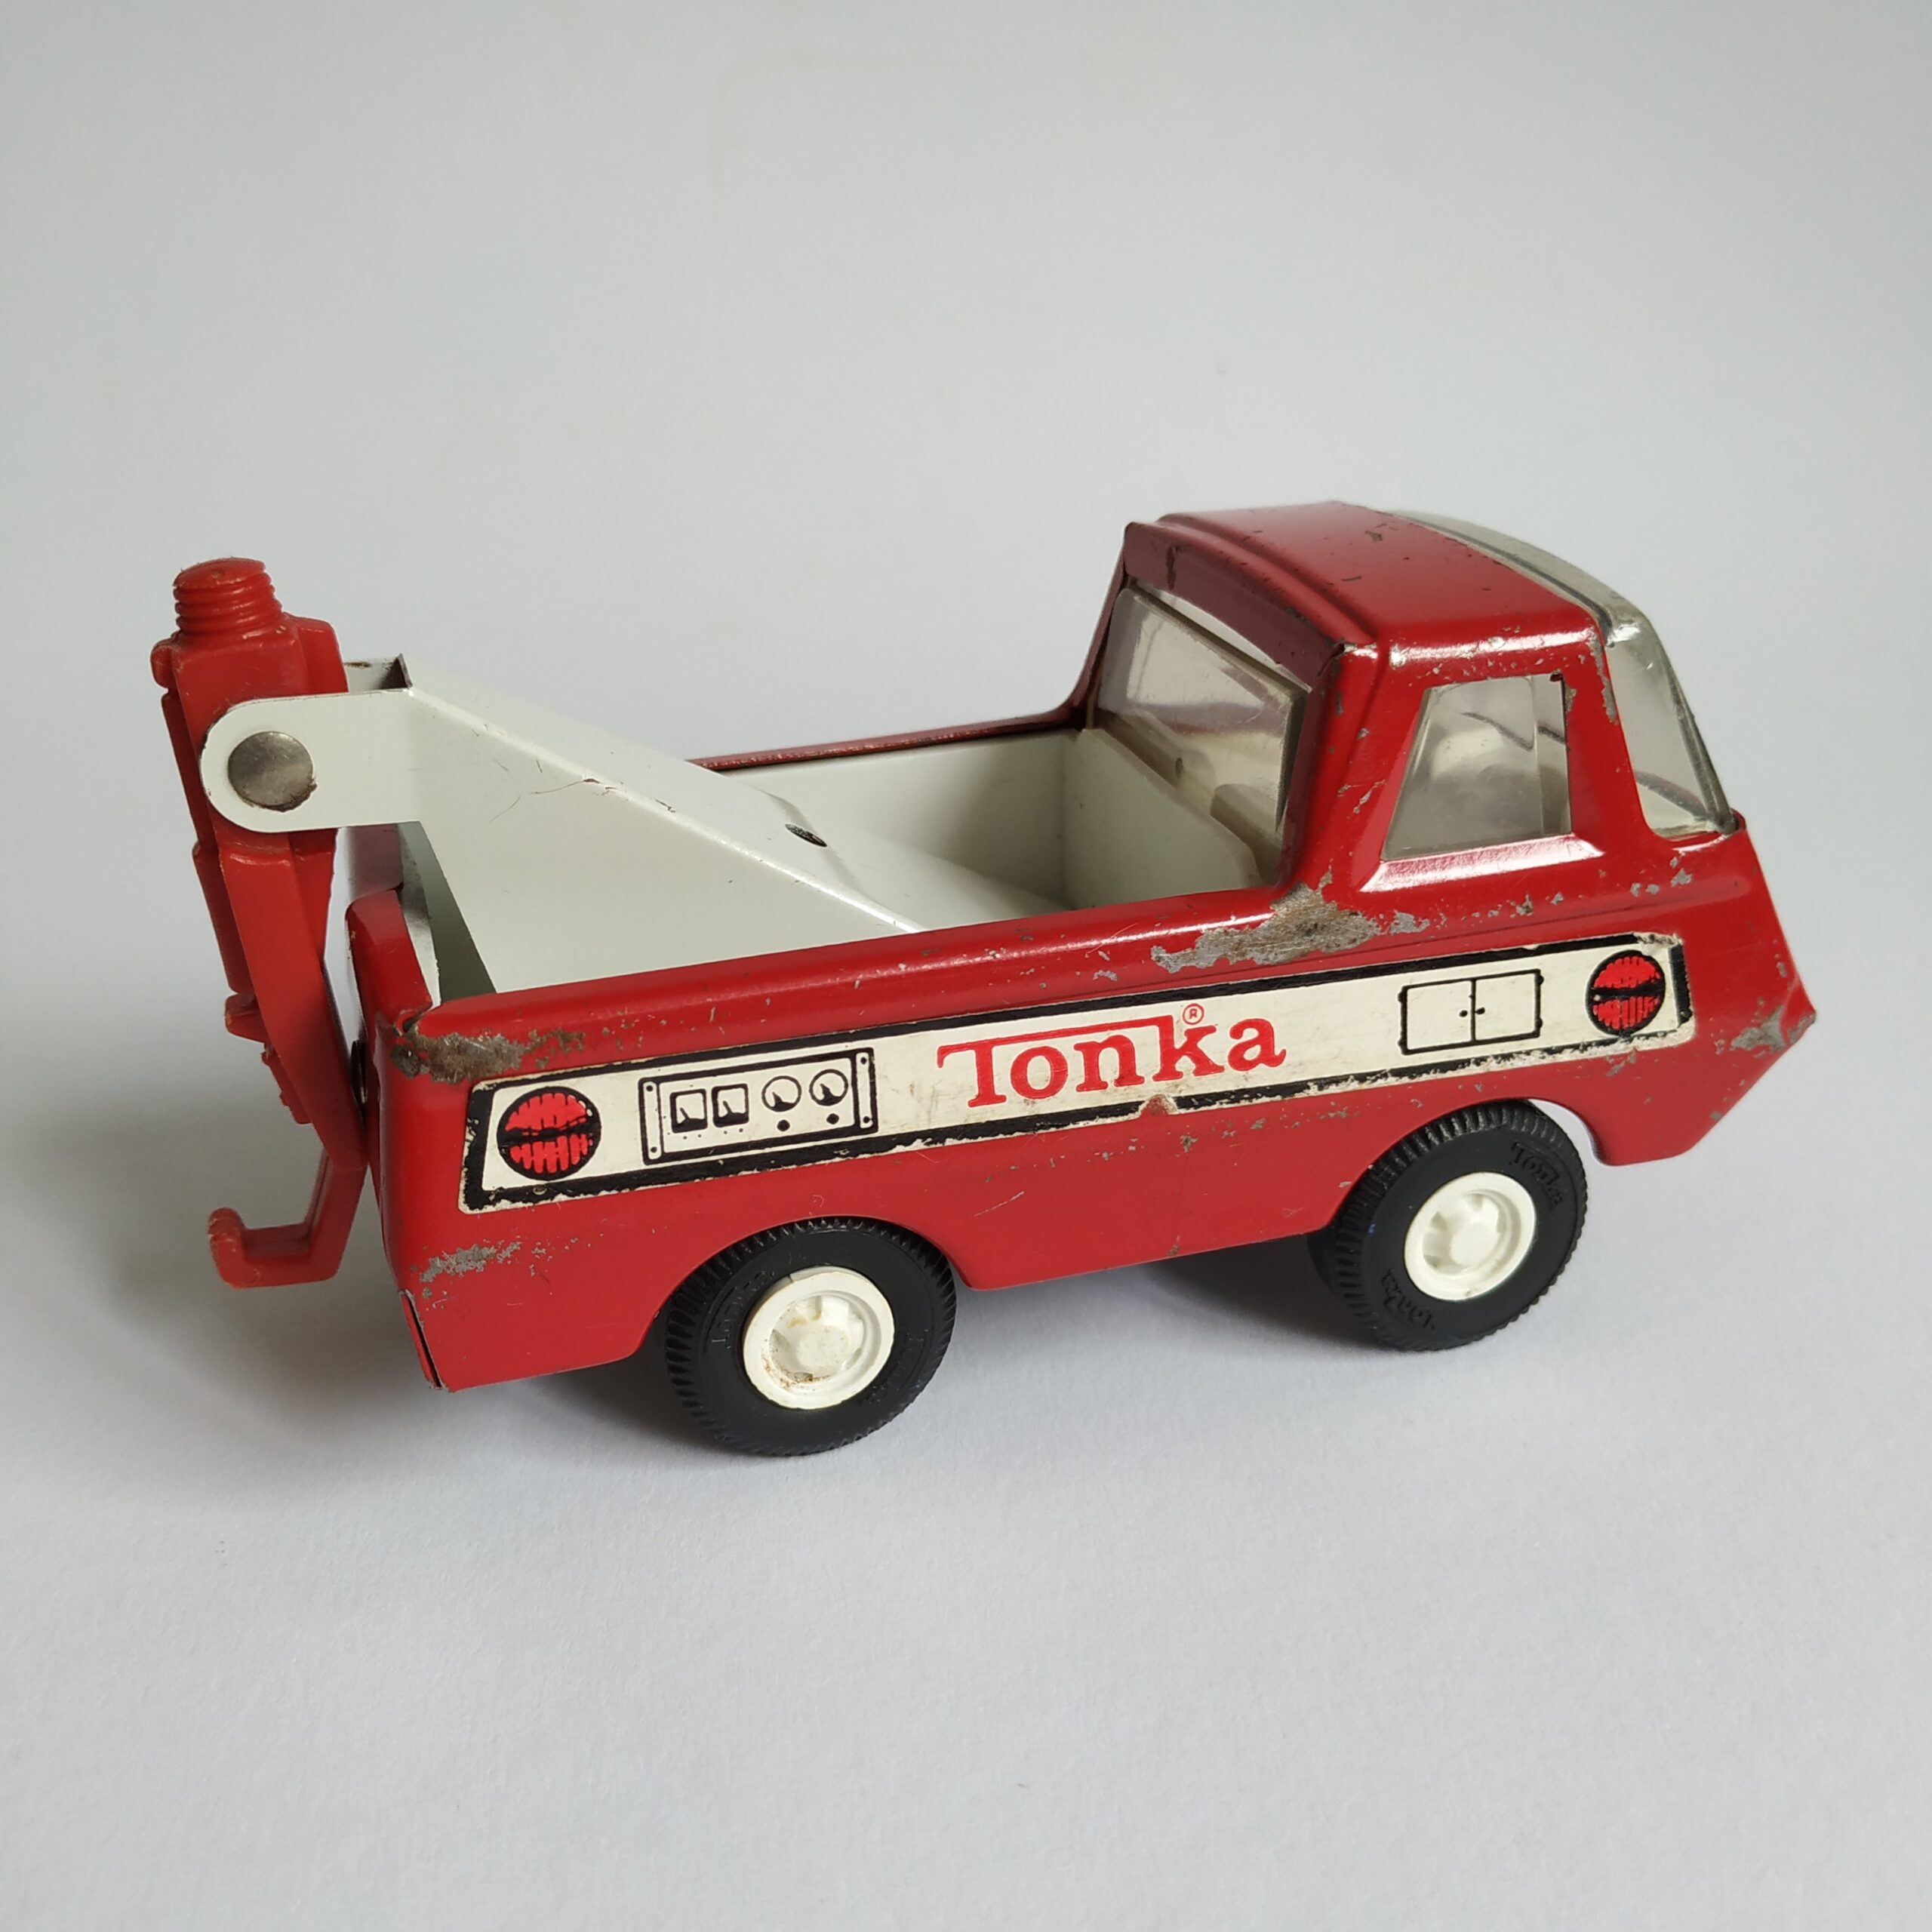 Wrak valuta uitrusting Vintage Speelgoedauto / Takelwagen van Tonka - Queens Vintage